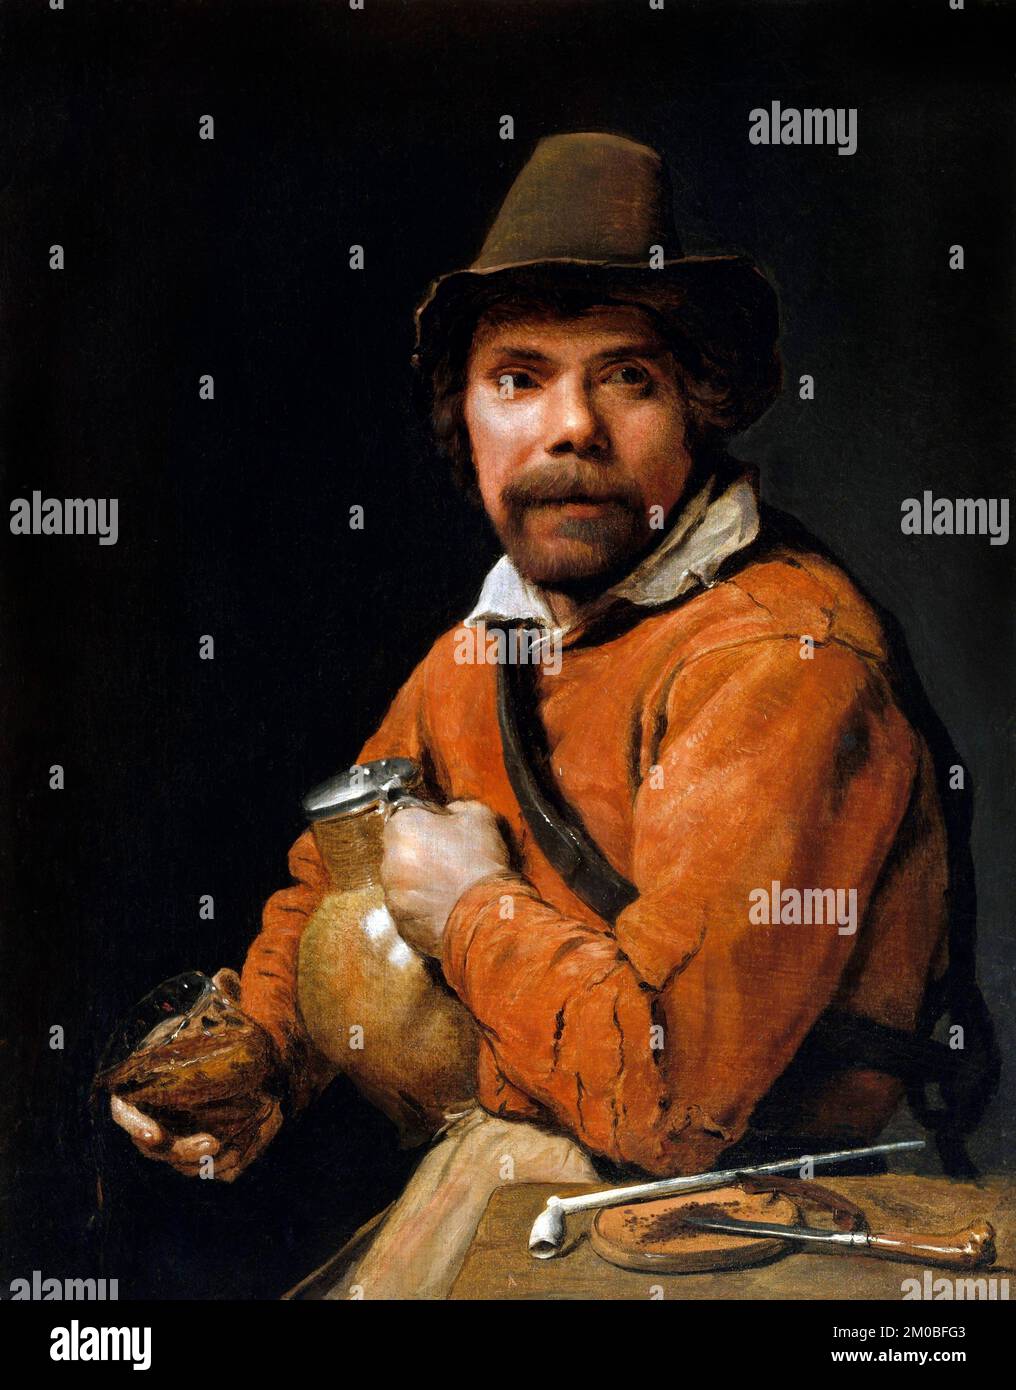 A man hält einen Krug vom flämischen Barockkünstler Michiel Sweerts (1618-1664), Öl auf Leinwand, c. 1660 Stockfoto